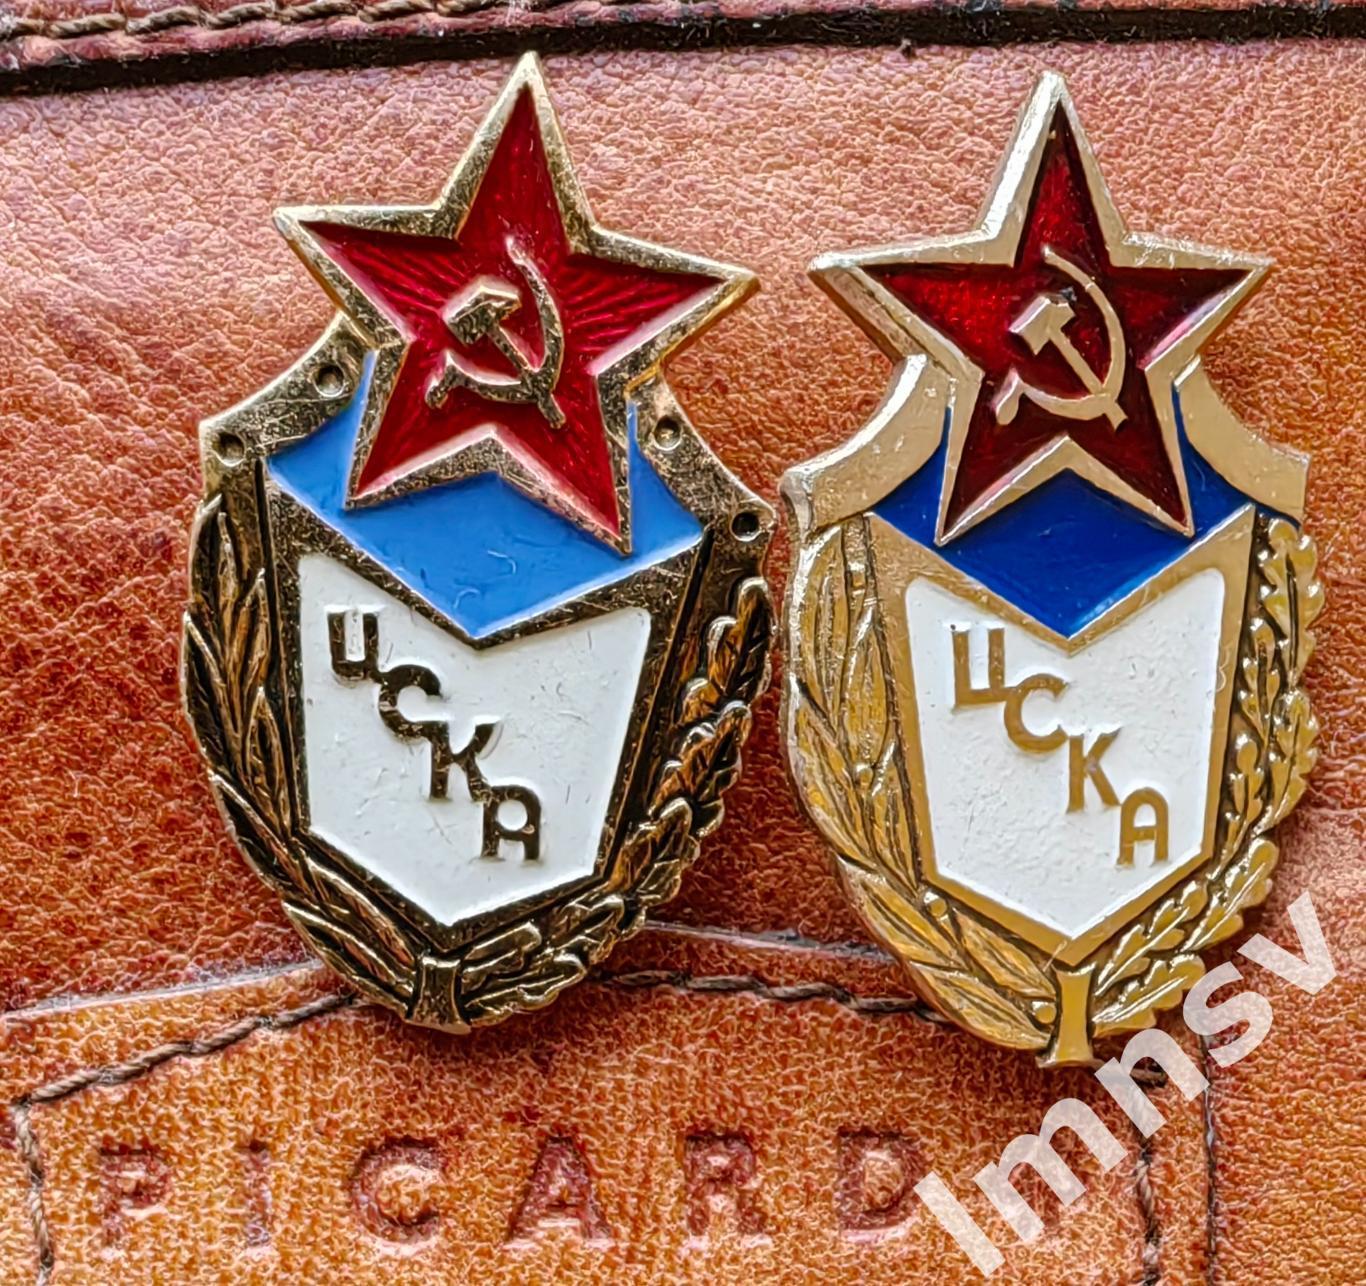 ЦСКА официальная эмблема 70-80-е годы. Два знака x